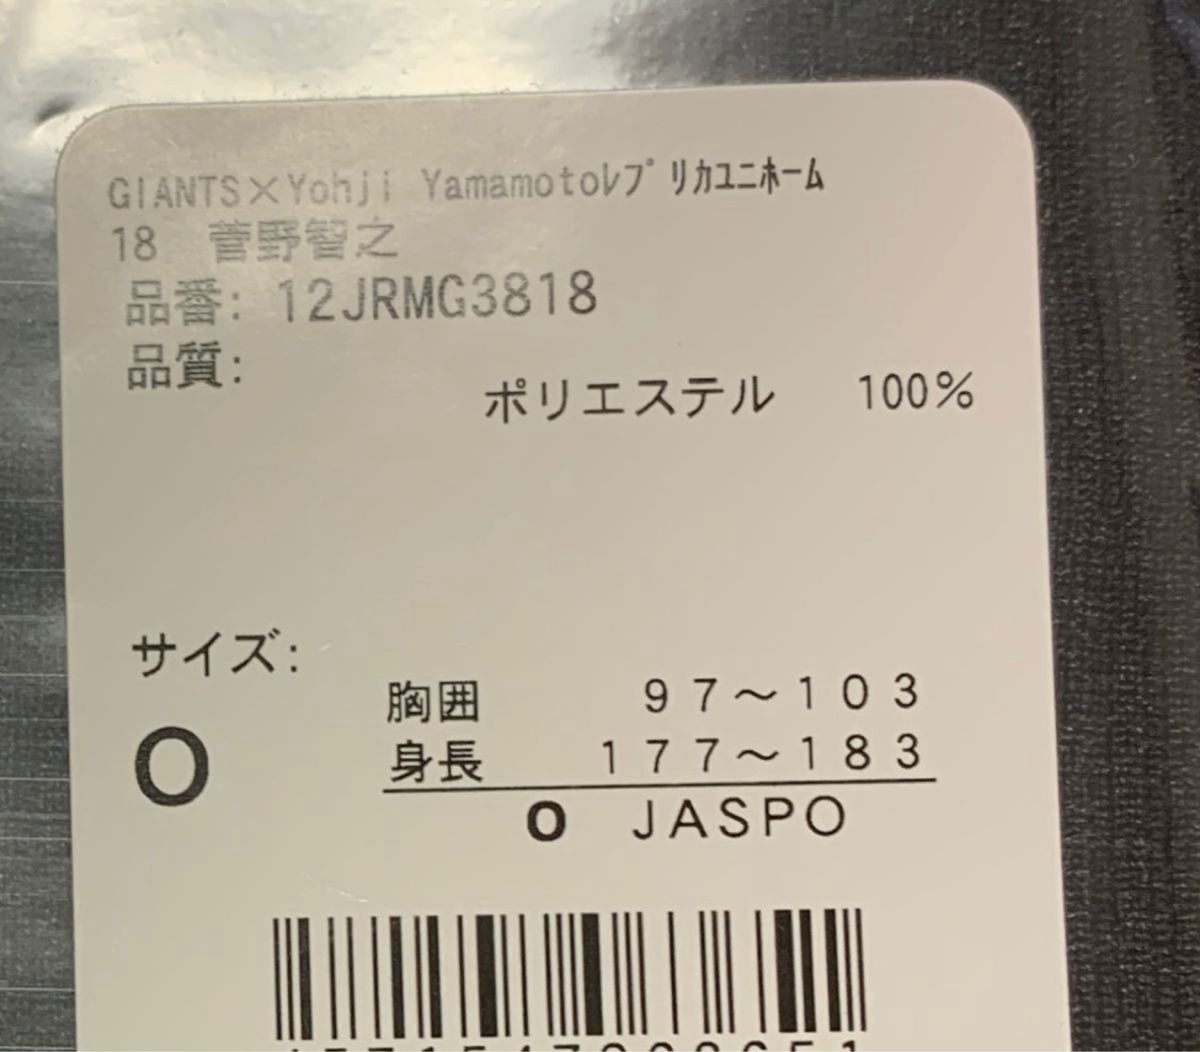 菅野智之 GIANTS Yohji Yamamoto ユニホーム ジャイアンツ 巨人 ヨウジヤマモト NEWERA キャップ 帽子